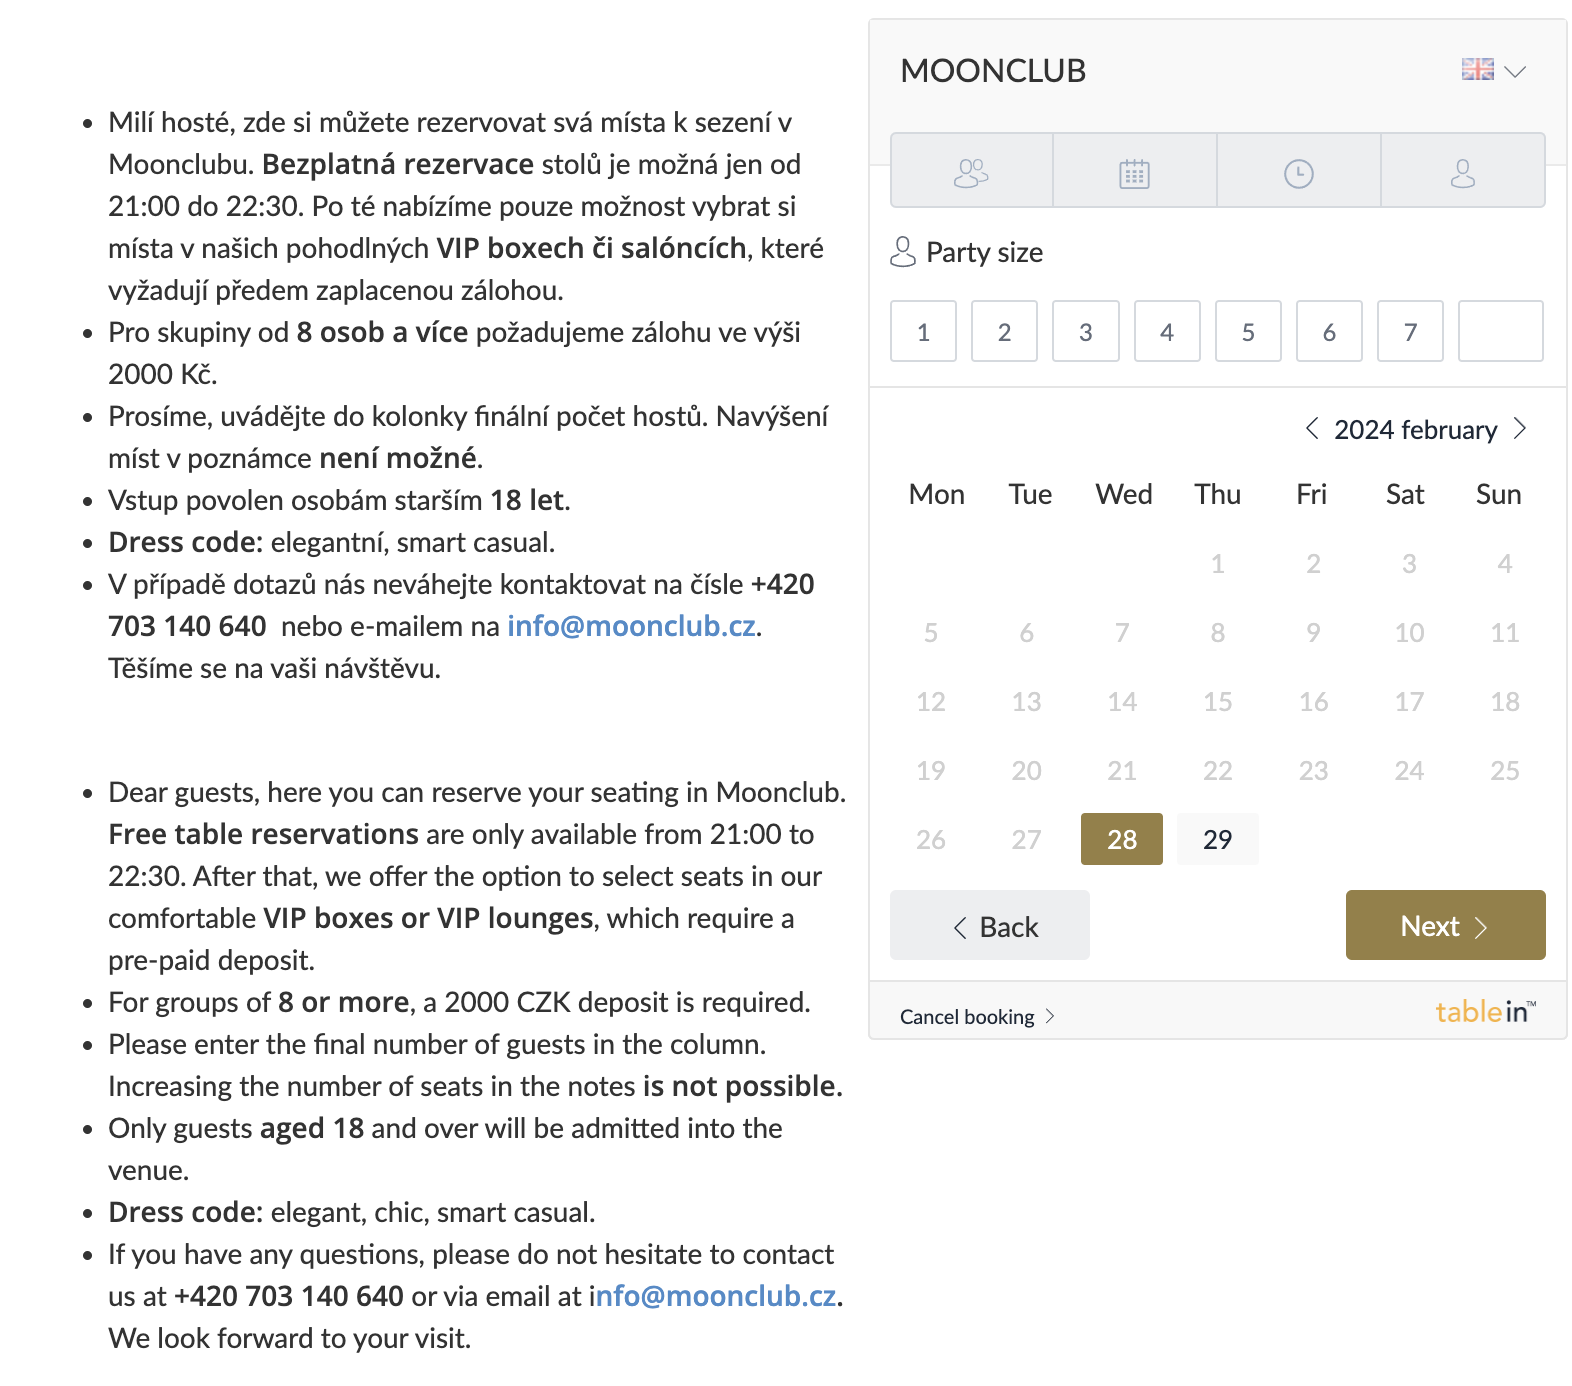 moonclub restaurant booking process screenshot